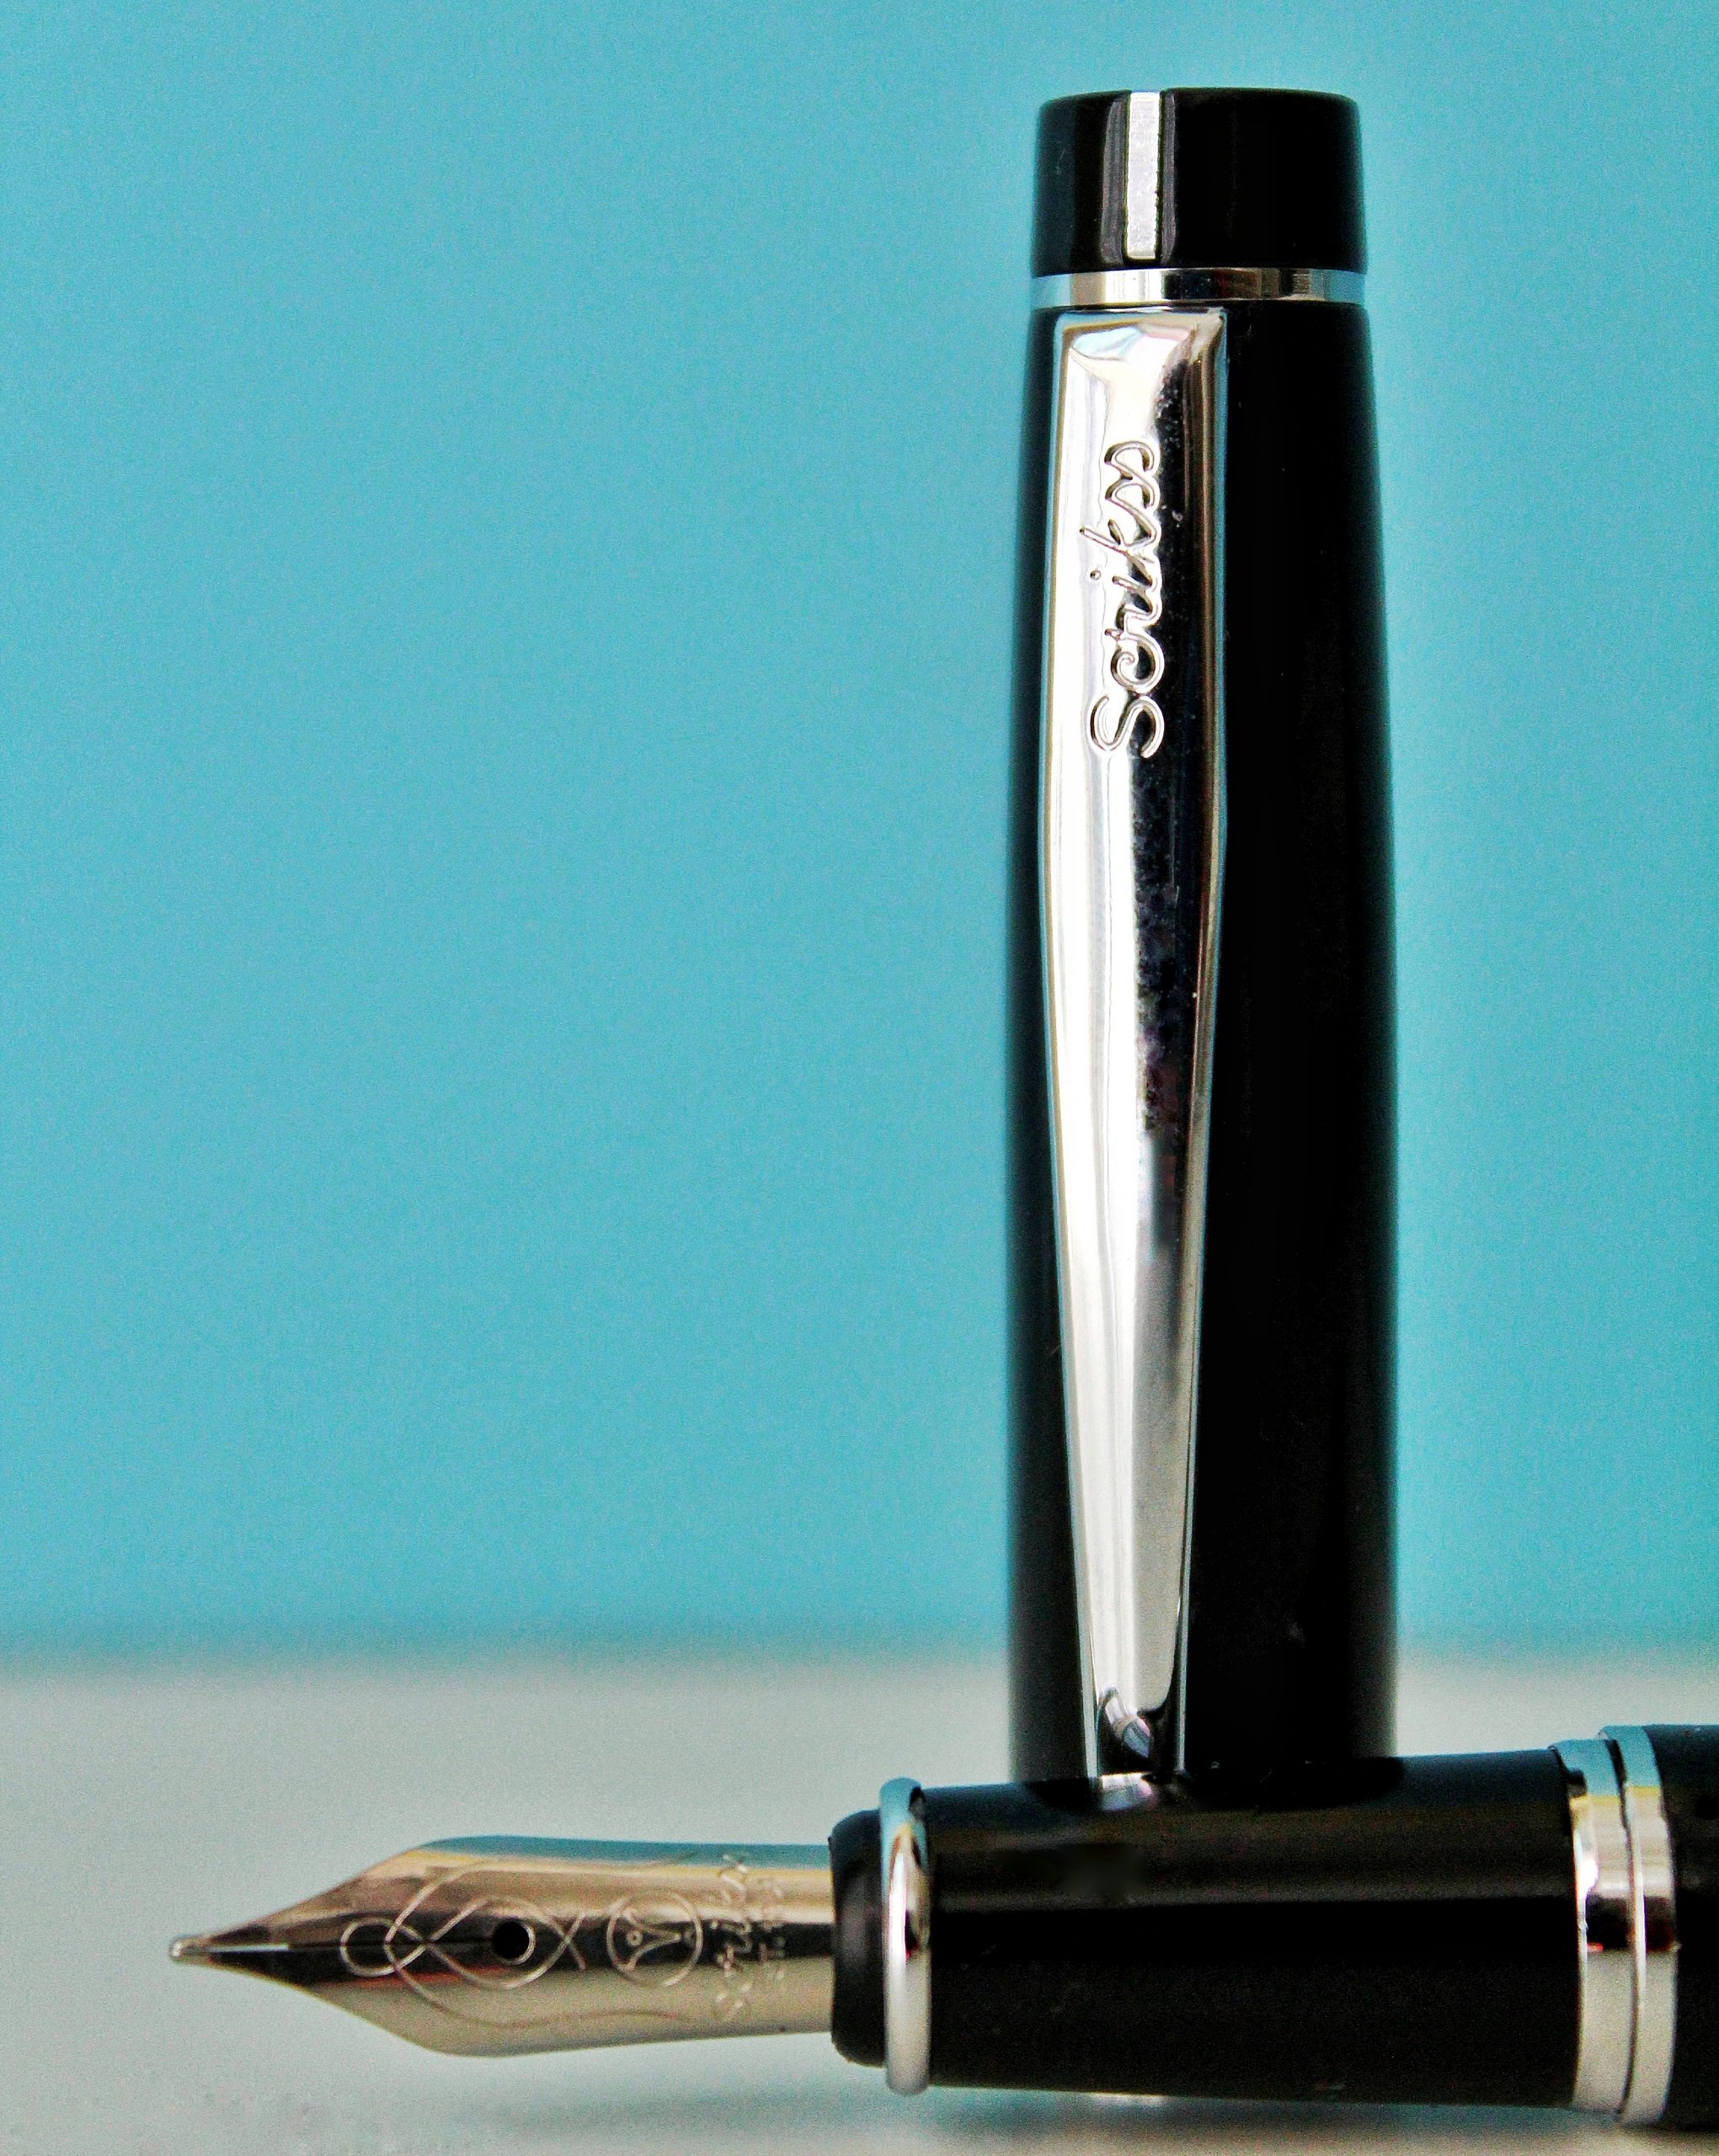 A fountain pen